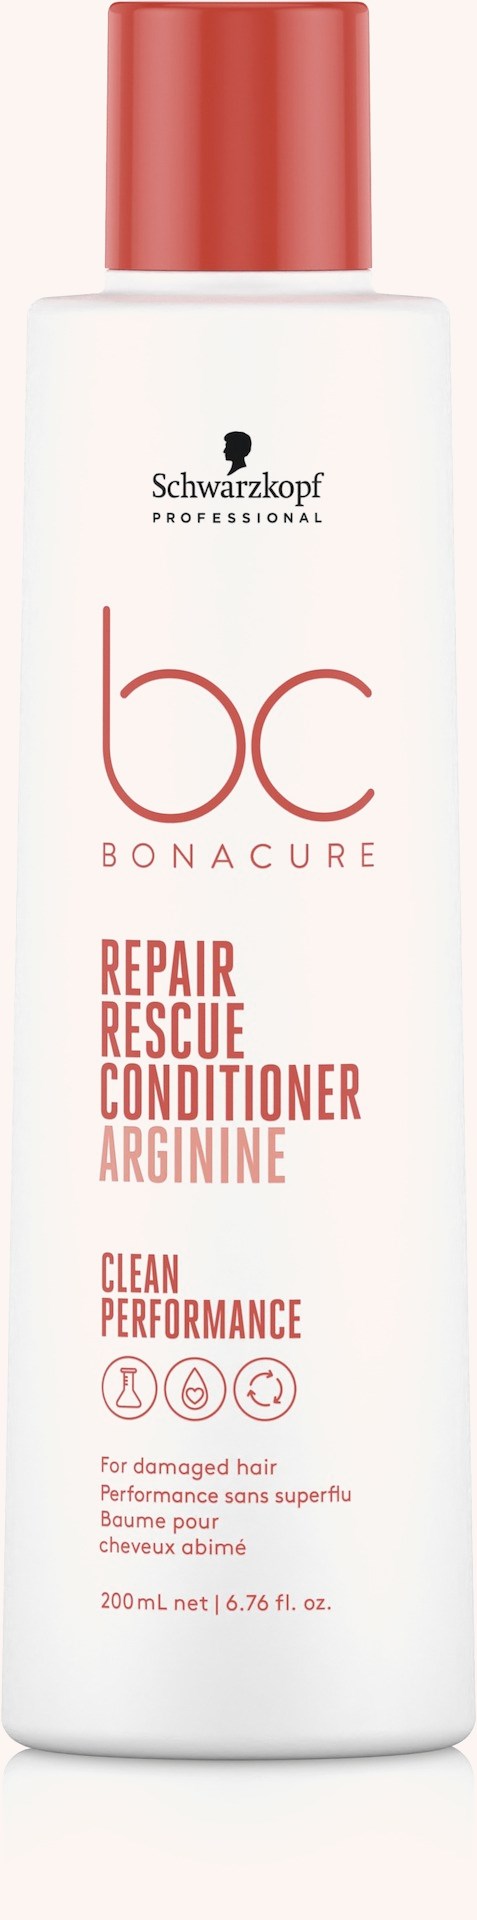 BC Bonacure Peptide Repair Rescue Conditioner 200 ml